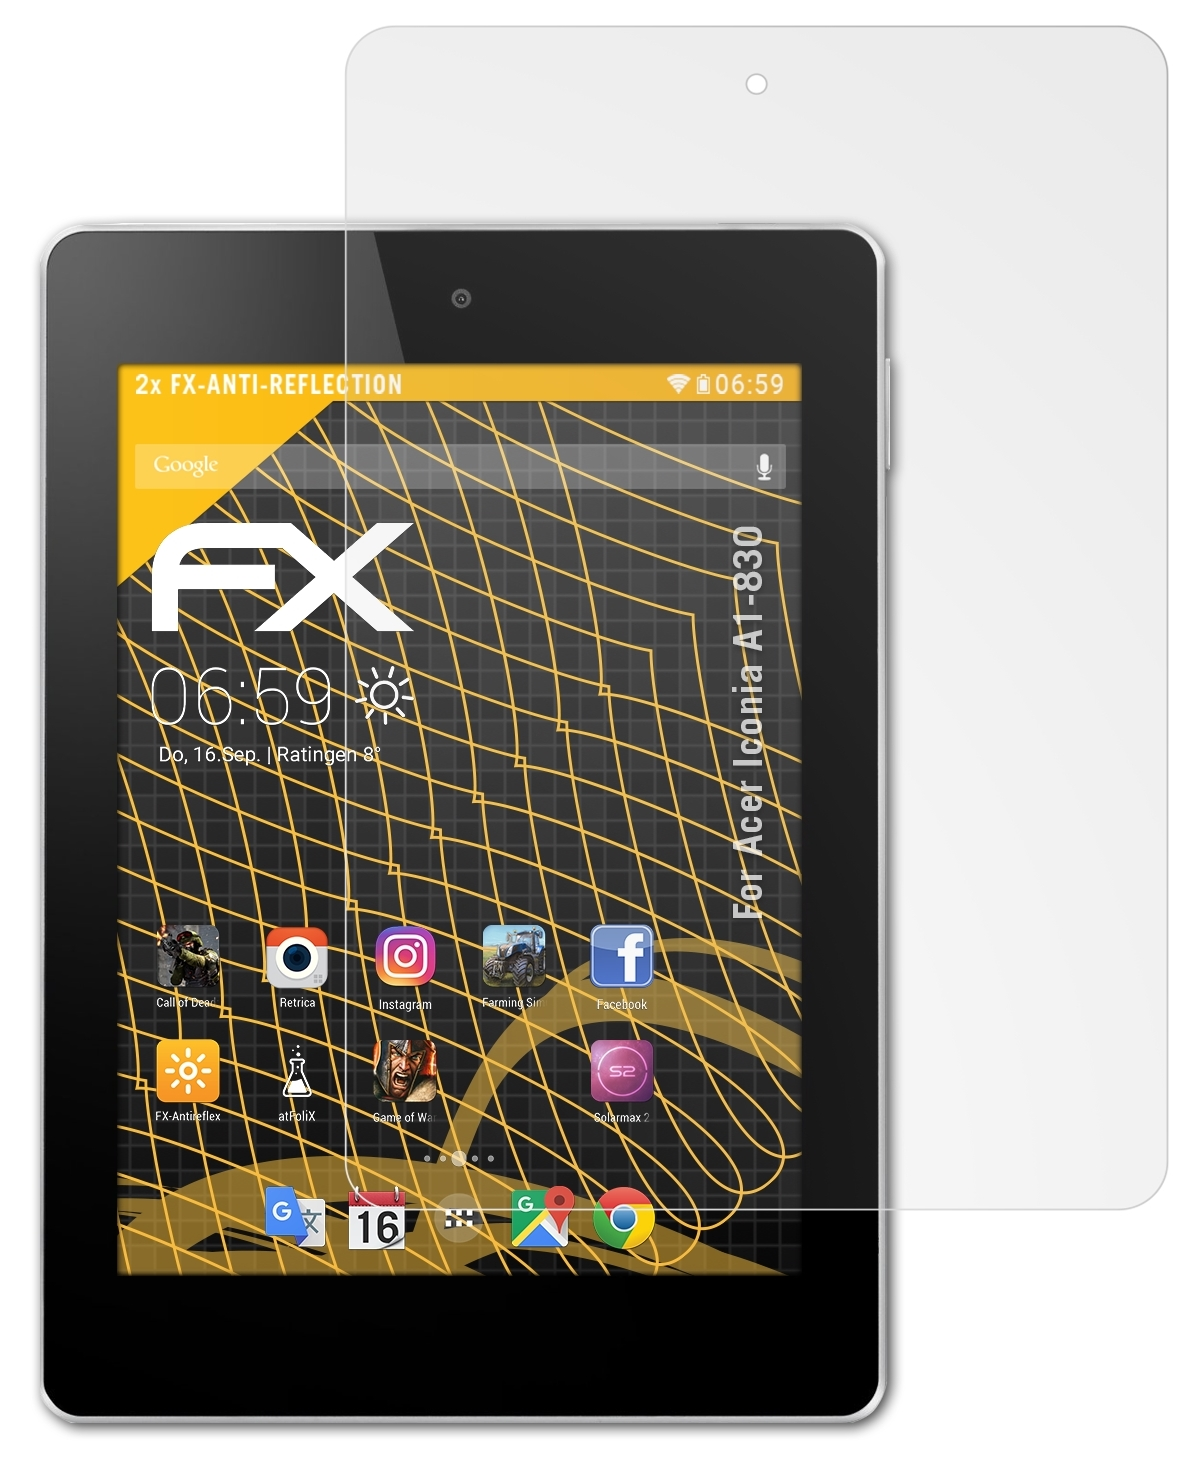 2x Acer A1-830) Displayschutz(für FX-Antireflex ATFOLIX Iconia